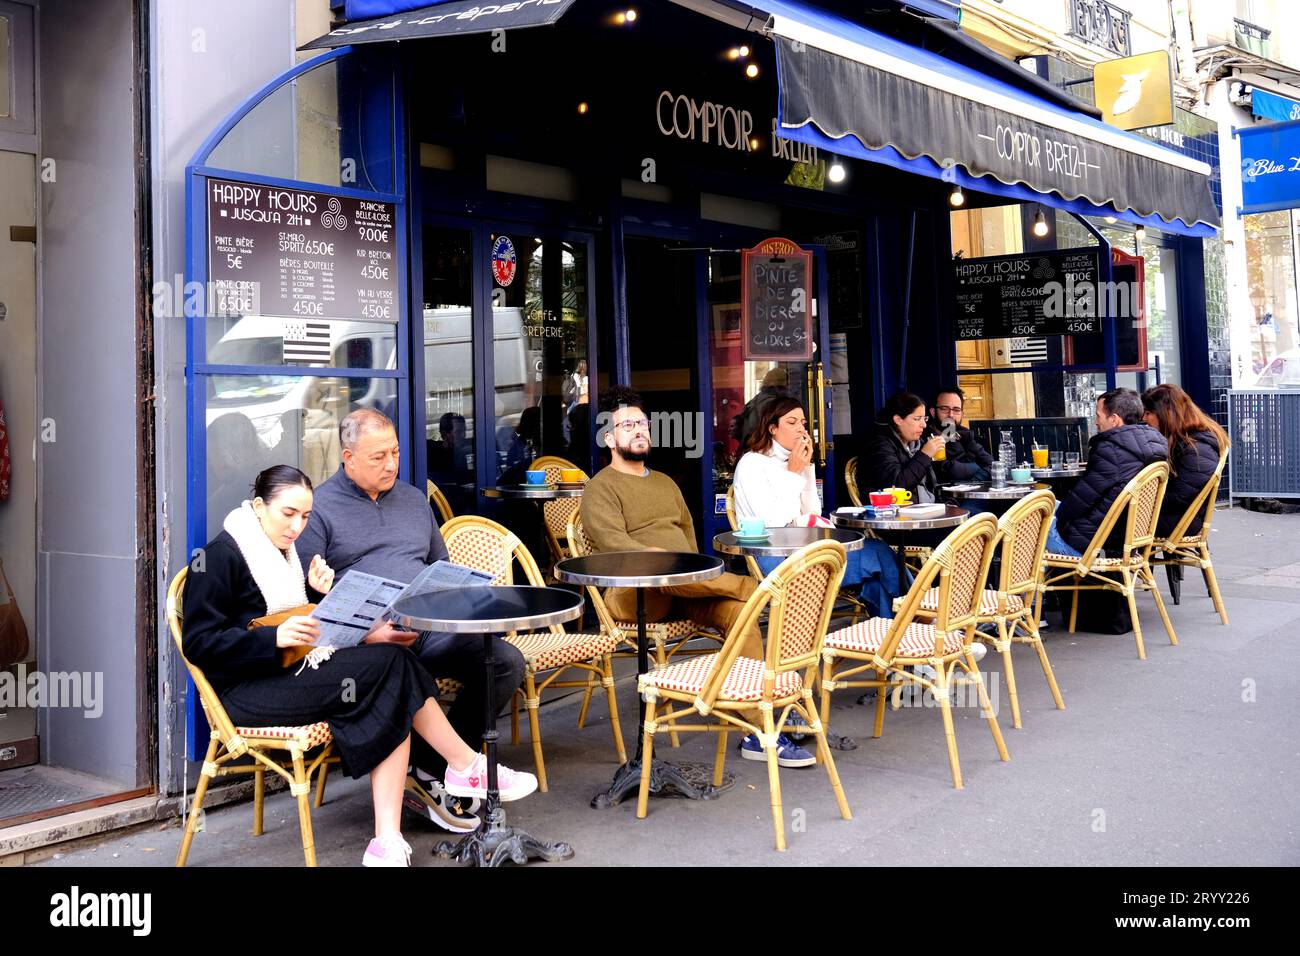 Cafe Coptoir Breizh in Montmartre Paris France Stock Photo